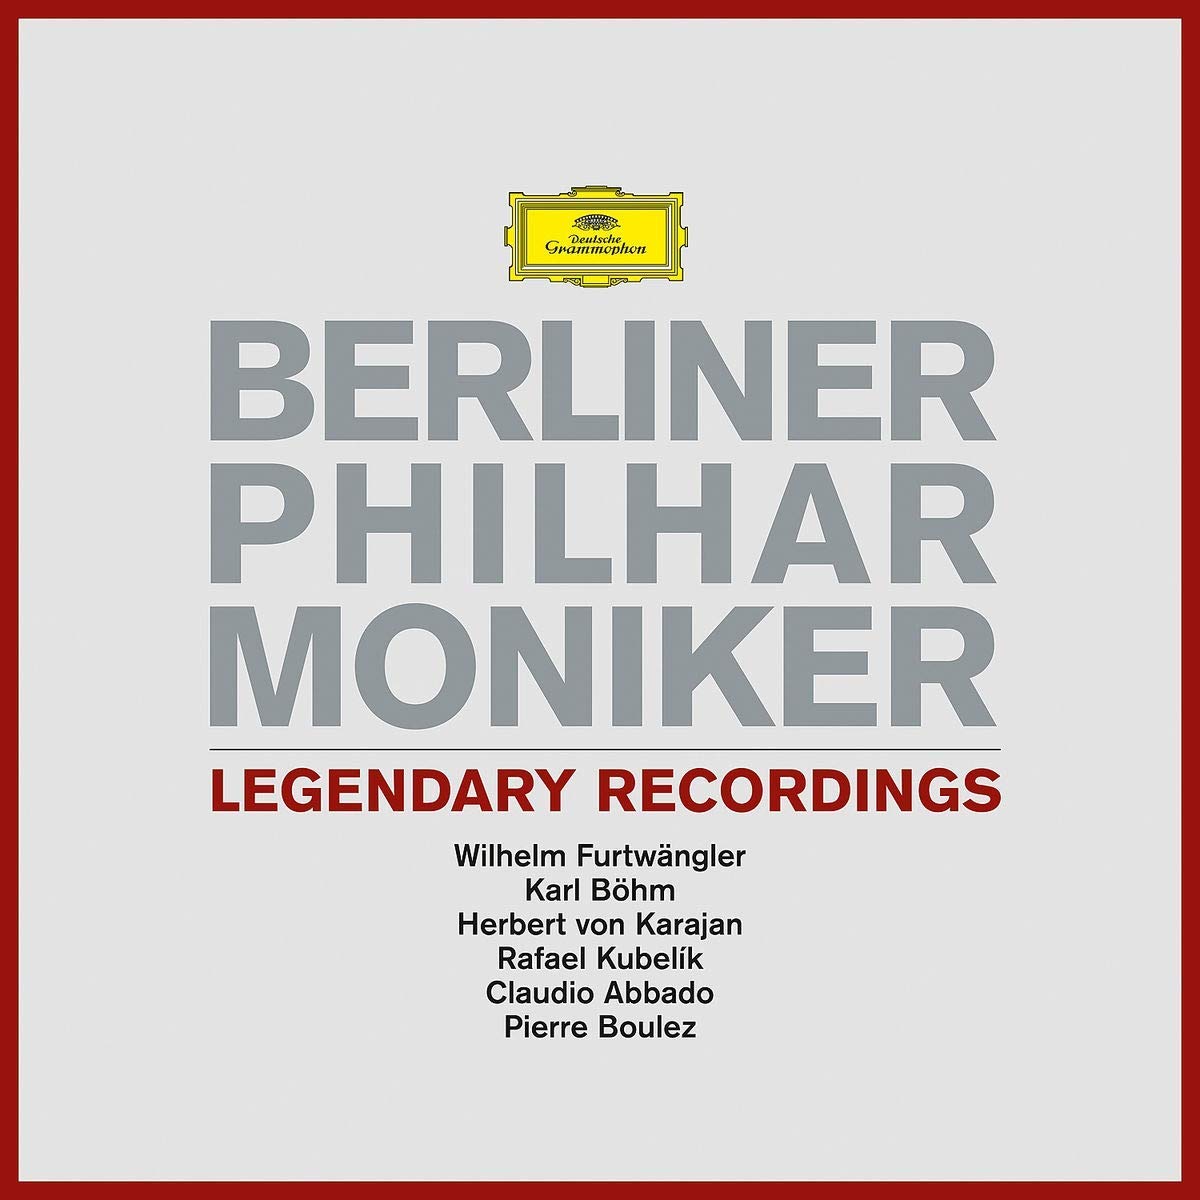 베를린 필하모닉 6대 명반 모음집 (Berliner Philharmoniker Legendary Recordings) [6LP 한정반]